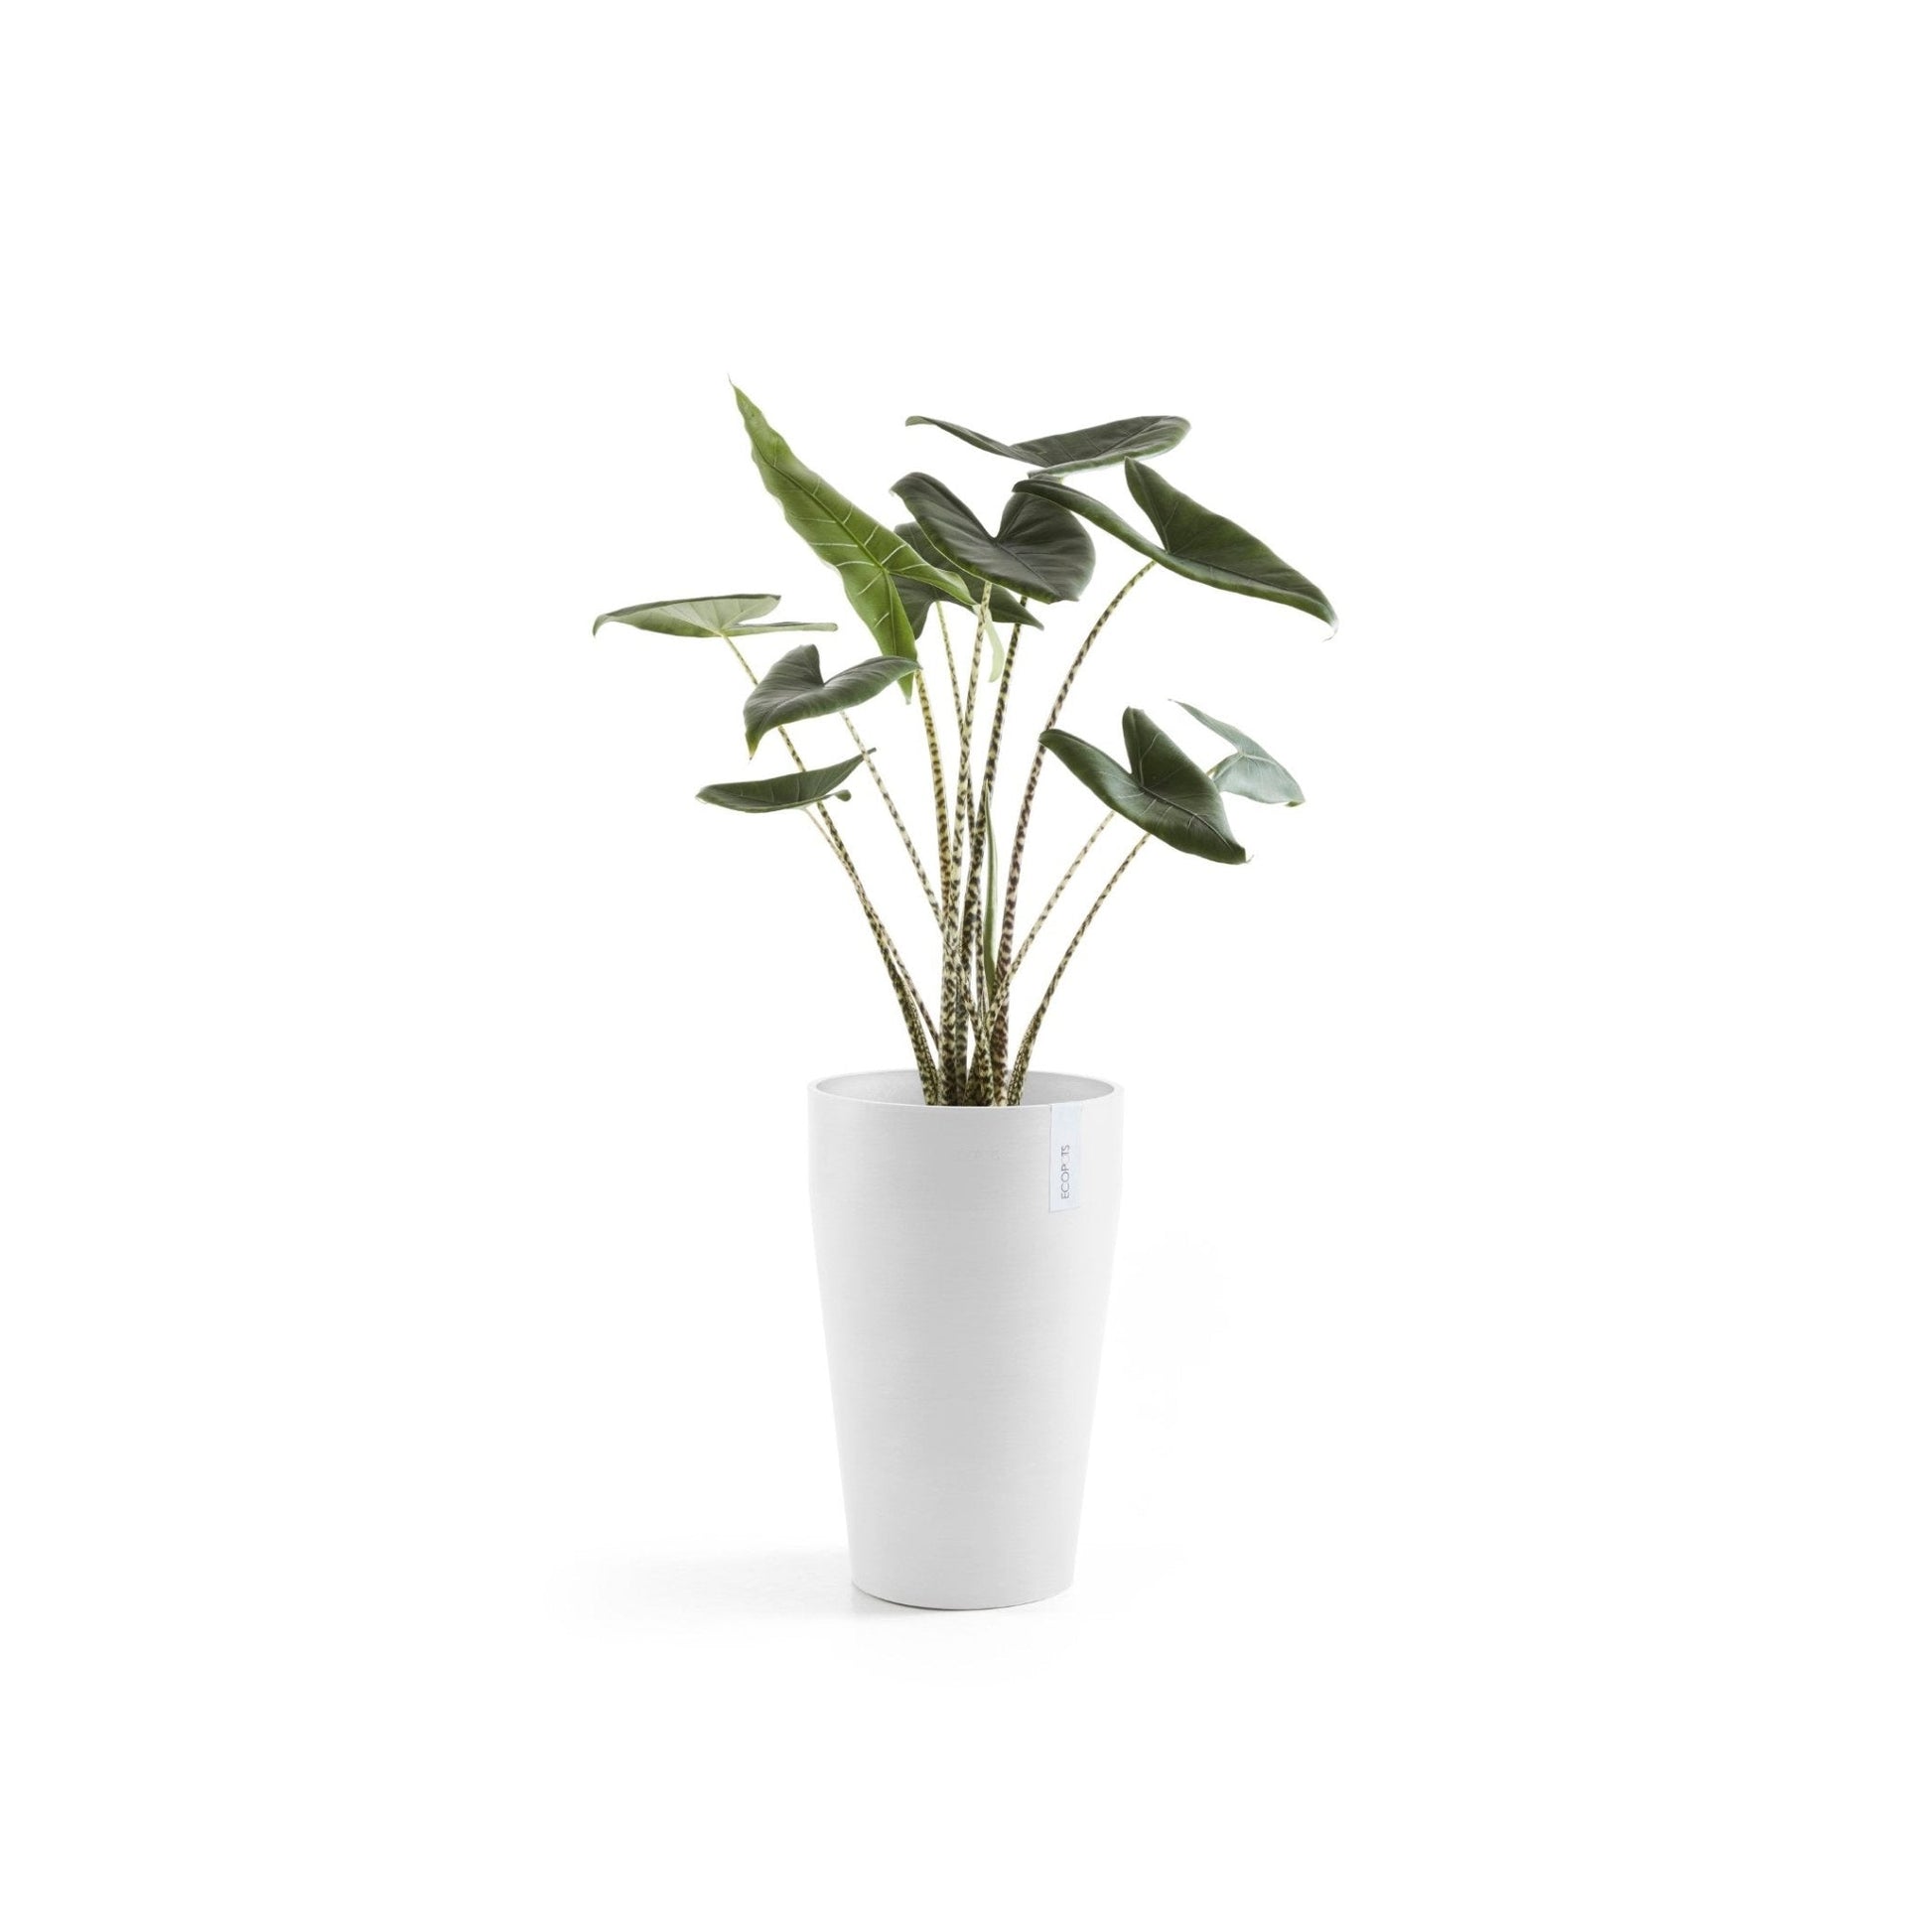 Kukkaruukku - Ecopots - Kukkaruukku Sankara keskikorkea 55cm valkoinen - Ecopots - Uuden aikakauden kukkaruukku kierrätysmateriaalista